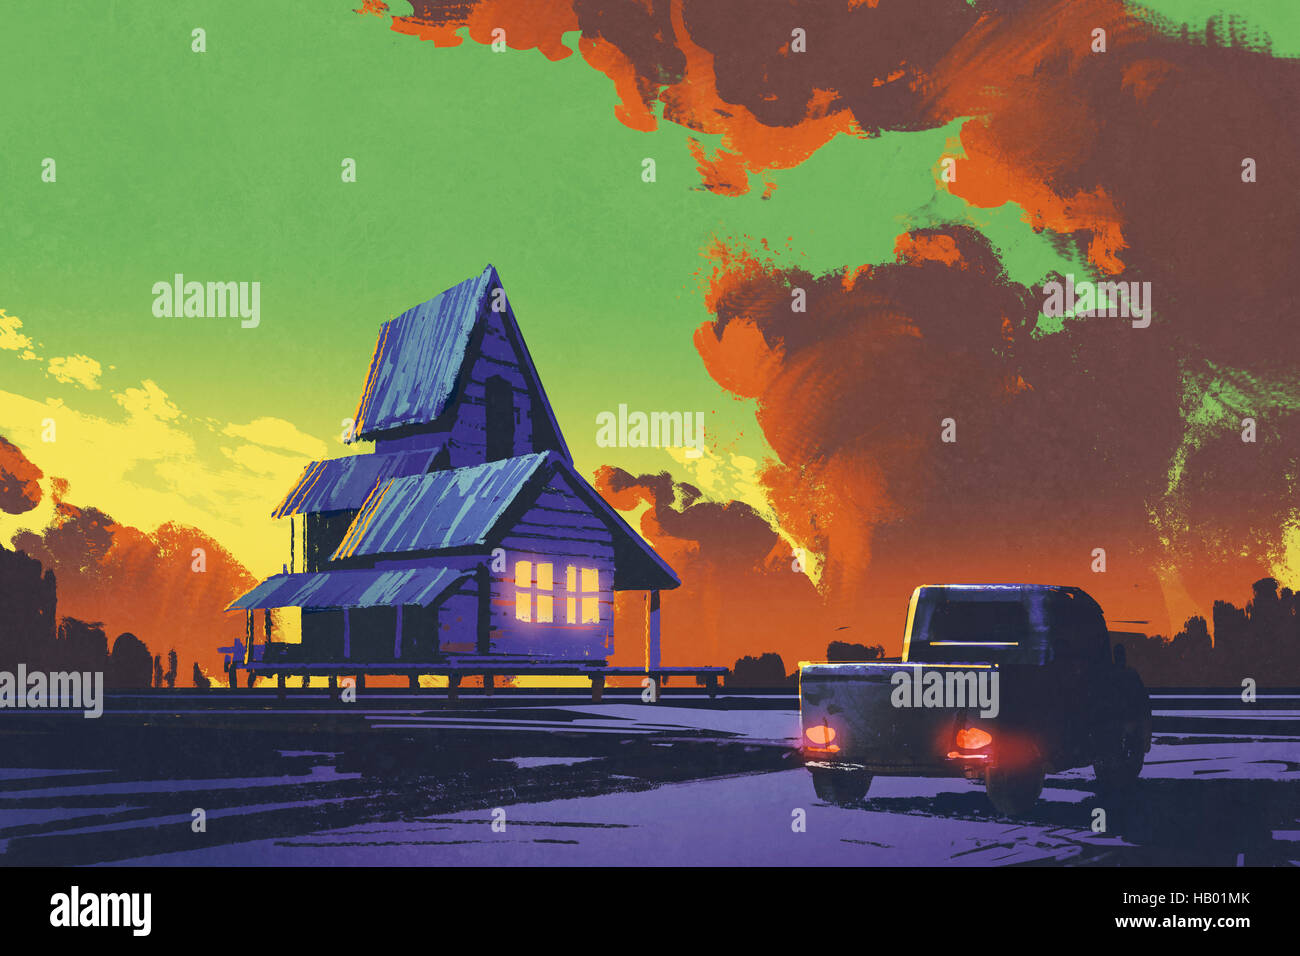 Landschaft mit alten Pickup-Truck und altes Haus vor bunten Himmel, Illustration, Malerei Stockfoto